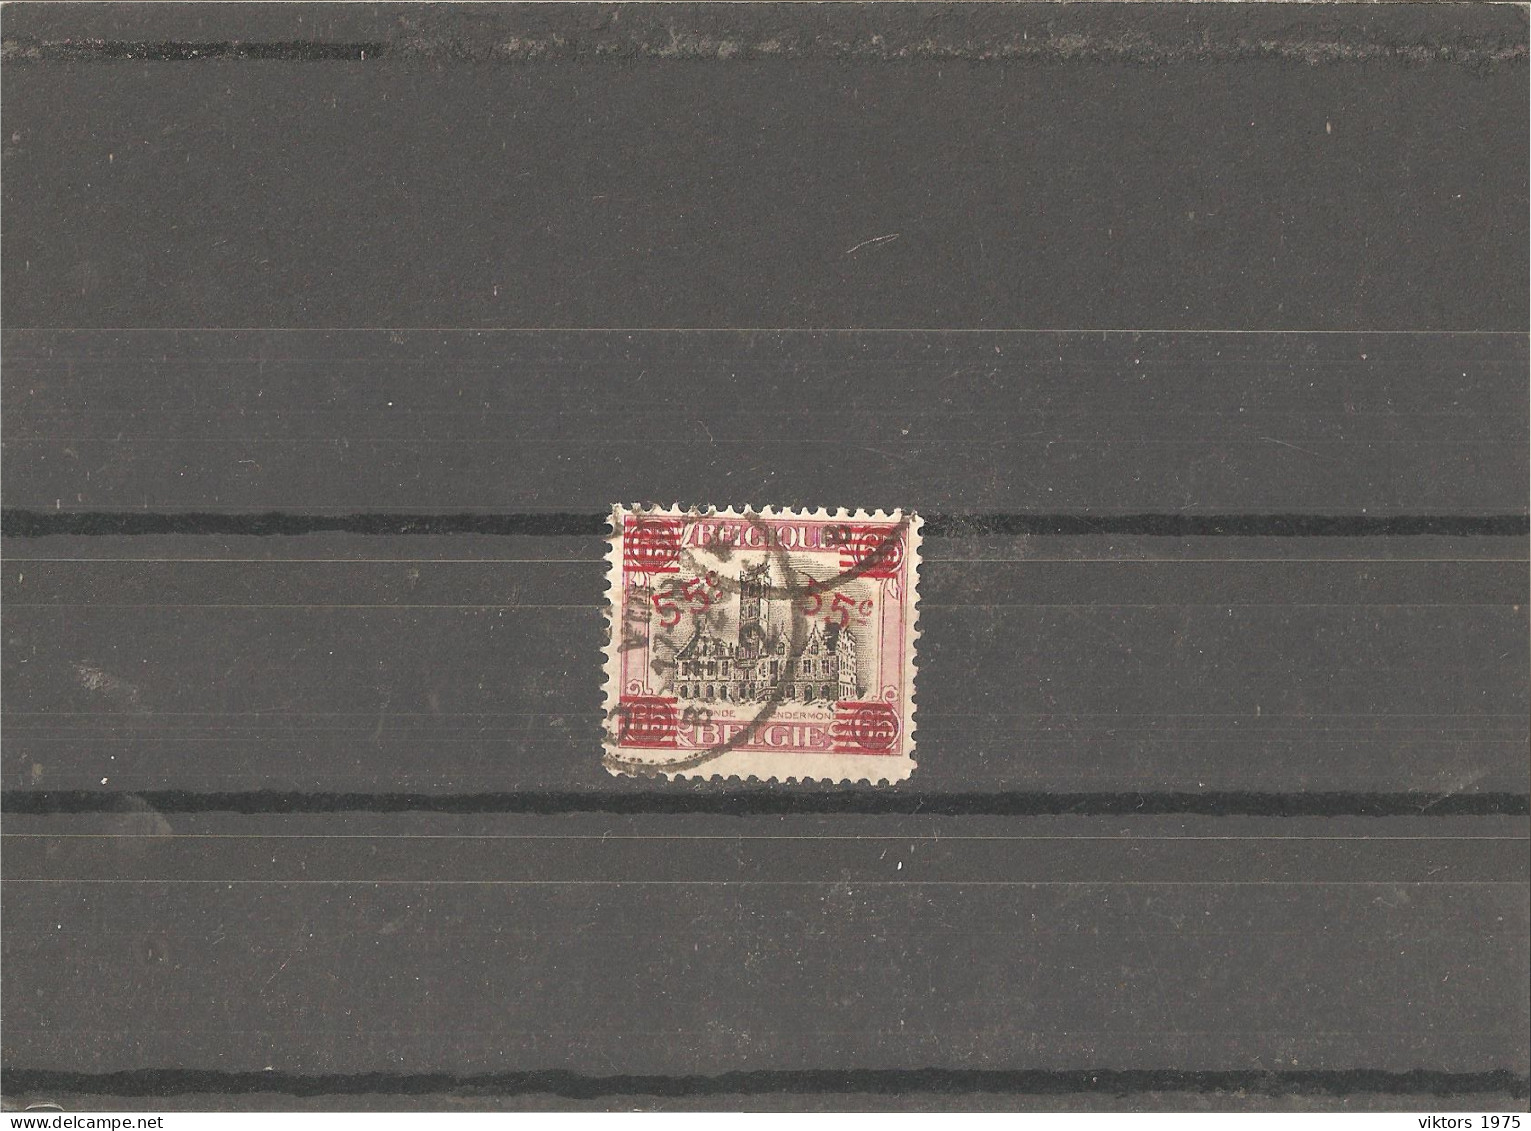 Used Stamp Nr.168 In MICHEL Catalog - Usati